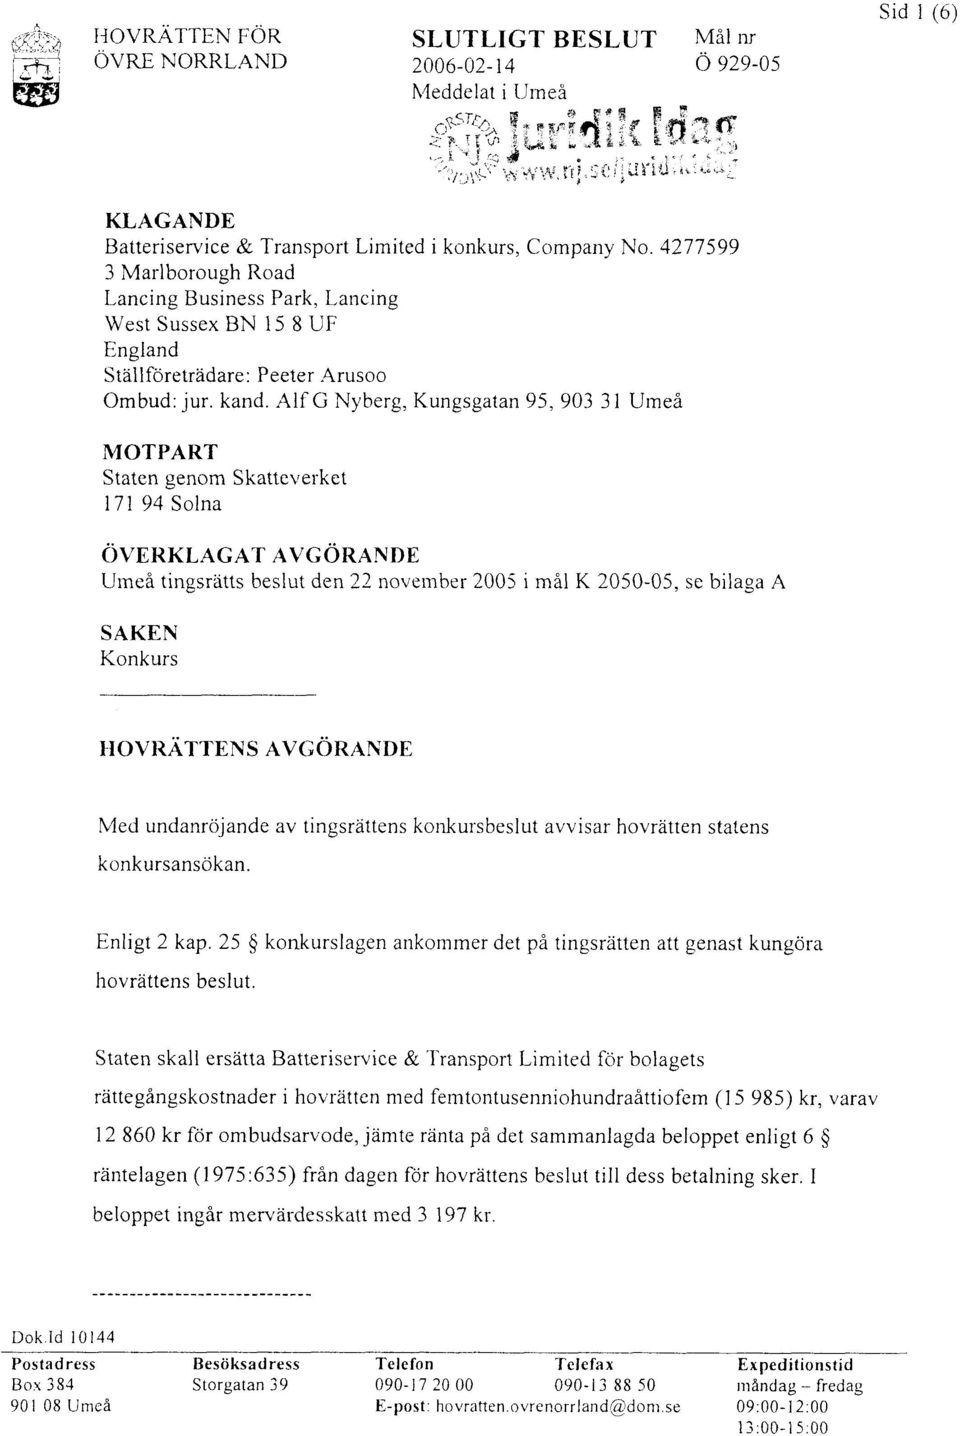 Alf G Nyberg, Kungsgatan 95, 903 3 1 Umeå MOTPART Staten genom Skatteverket 17 1 94 Solna OVERKLAGAT AVGORANDE Uineä tingsrätts beslut den 22 noveinber 2005 i mål K 2050-05, se bilaga A SAKEN Konkurs